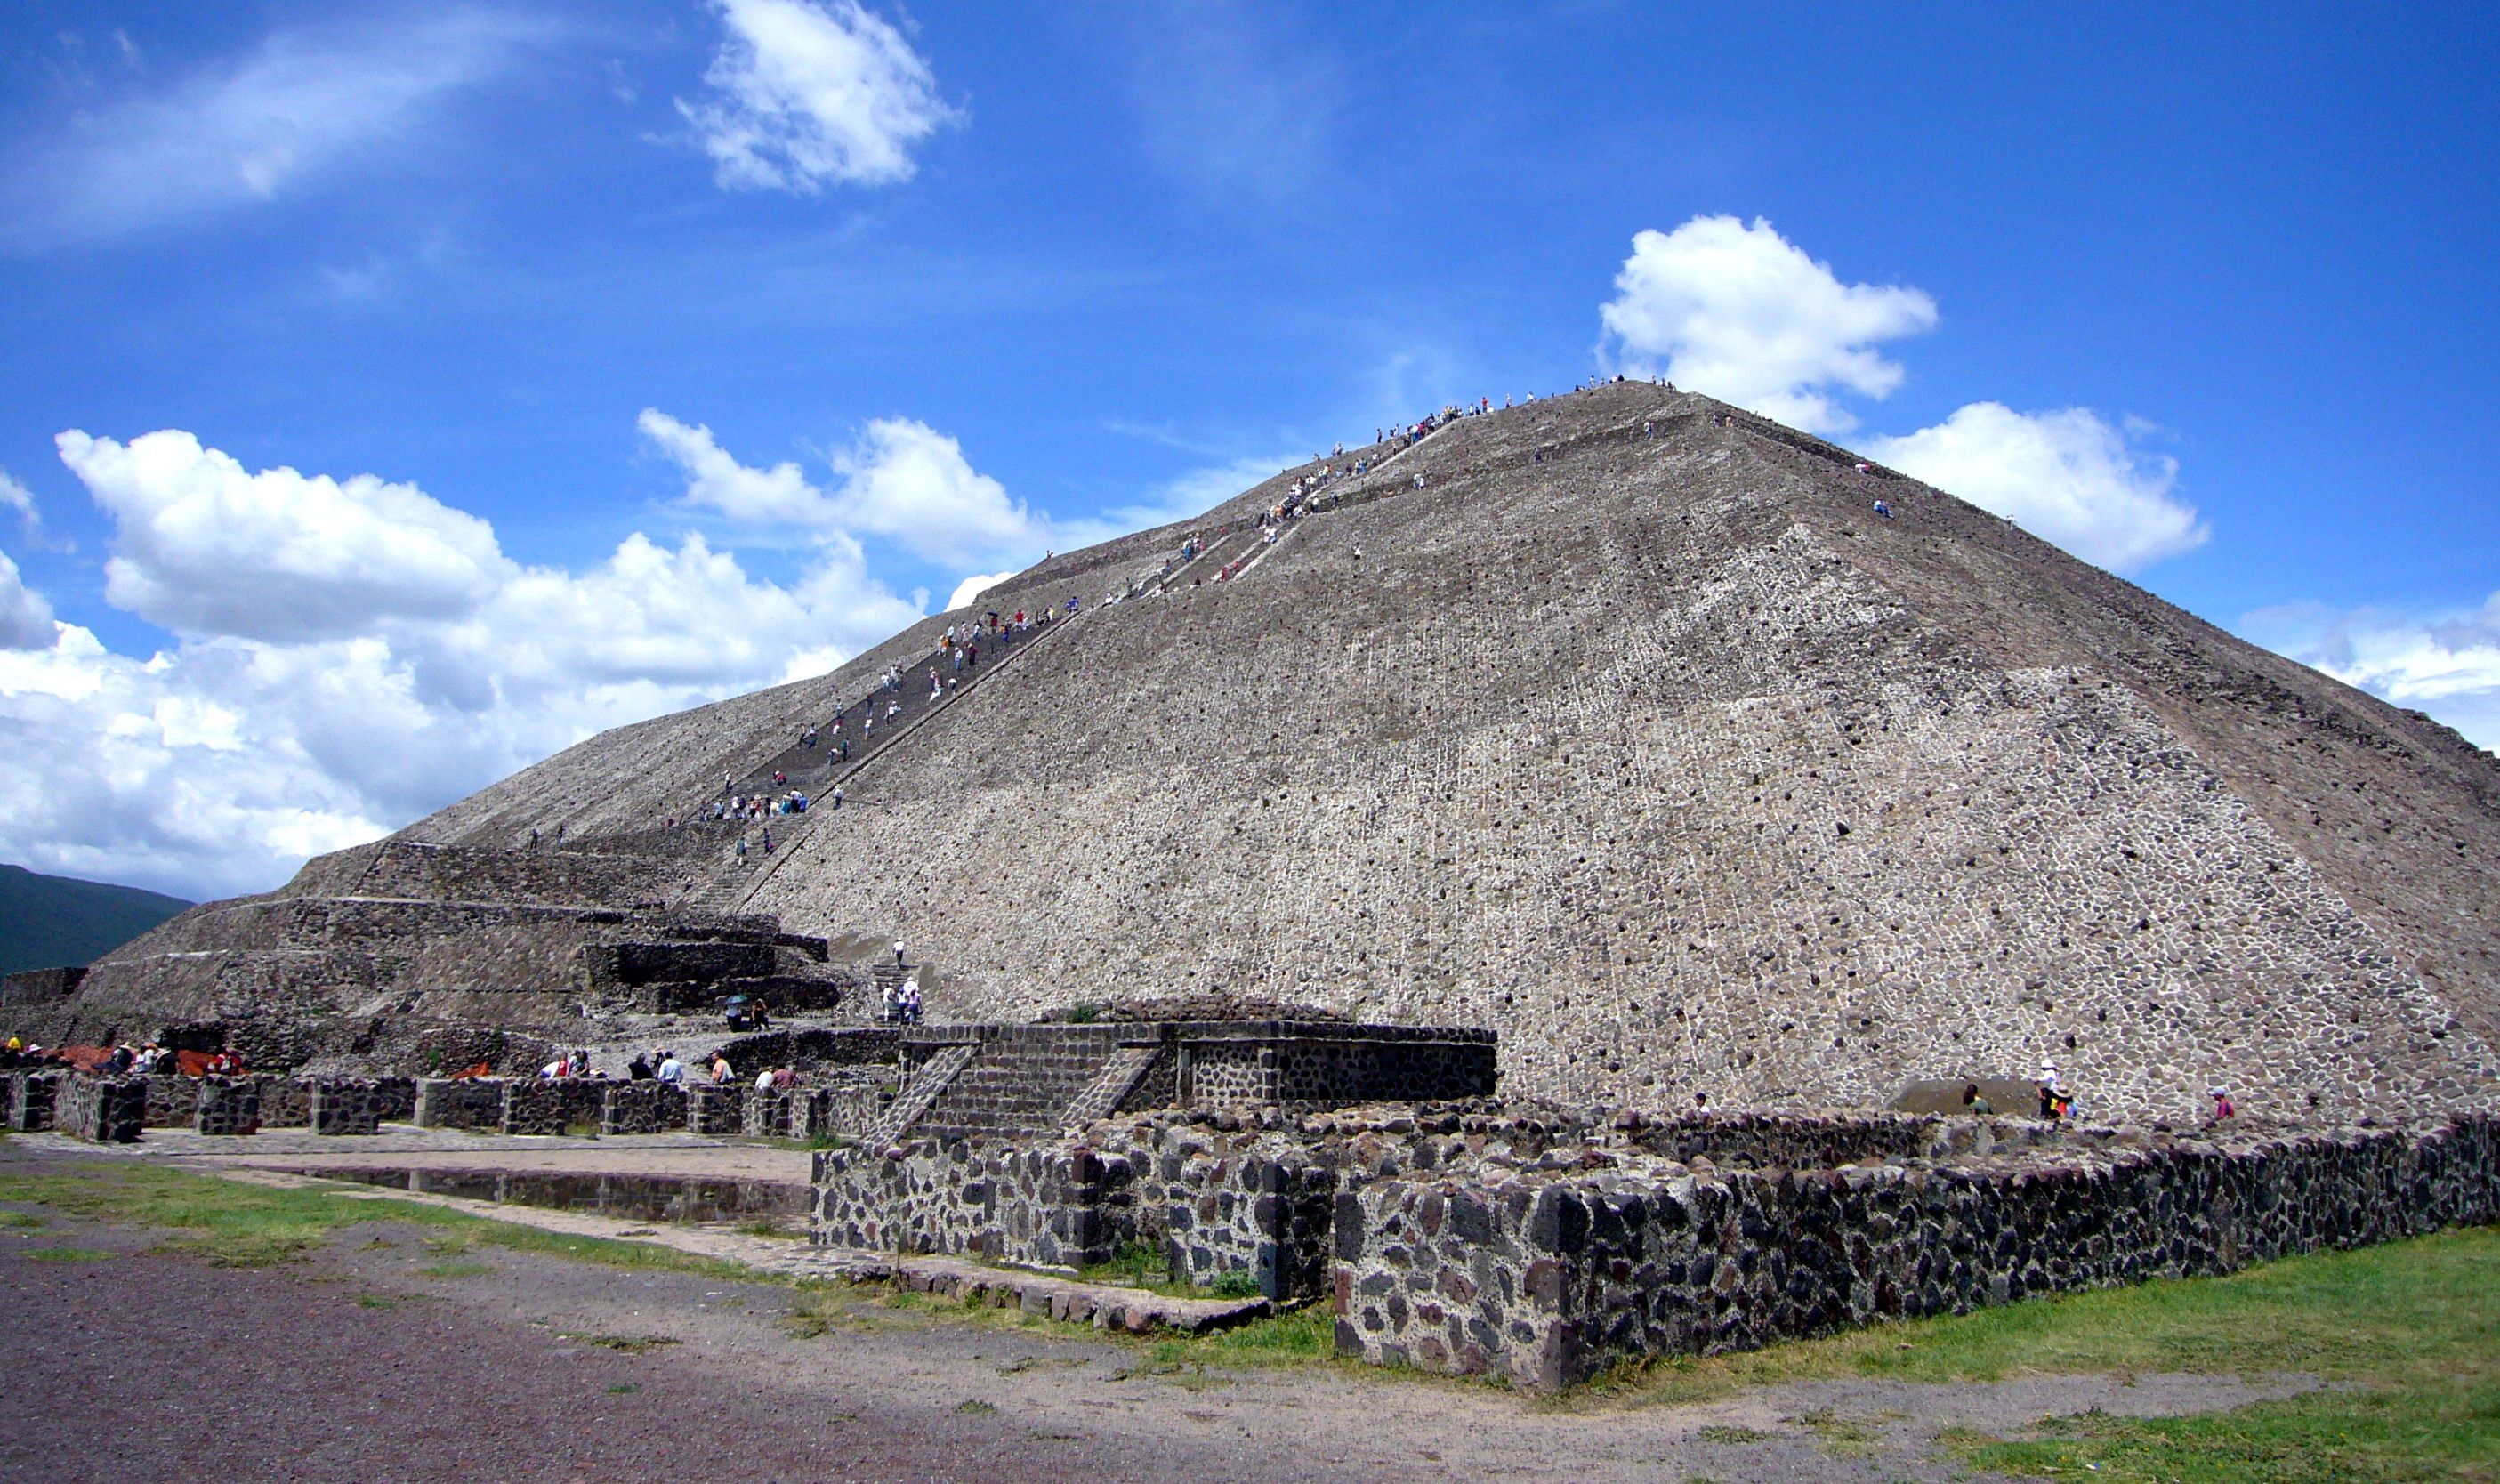 Pyramid of the Sun in Teotihuacan